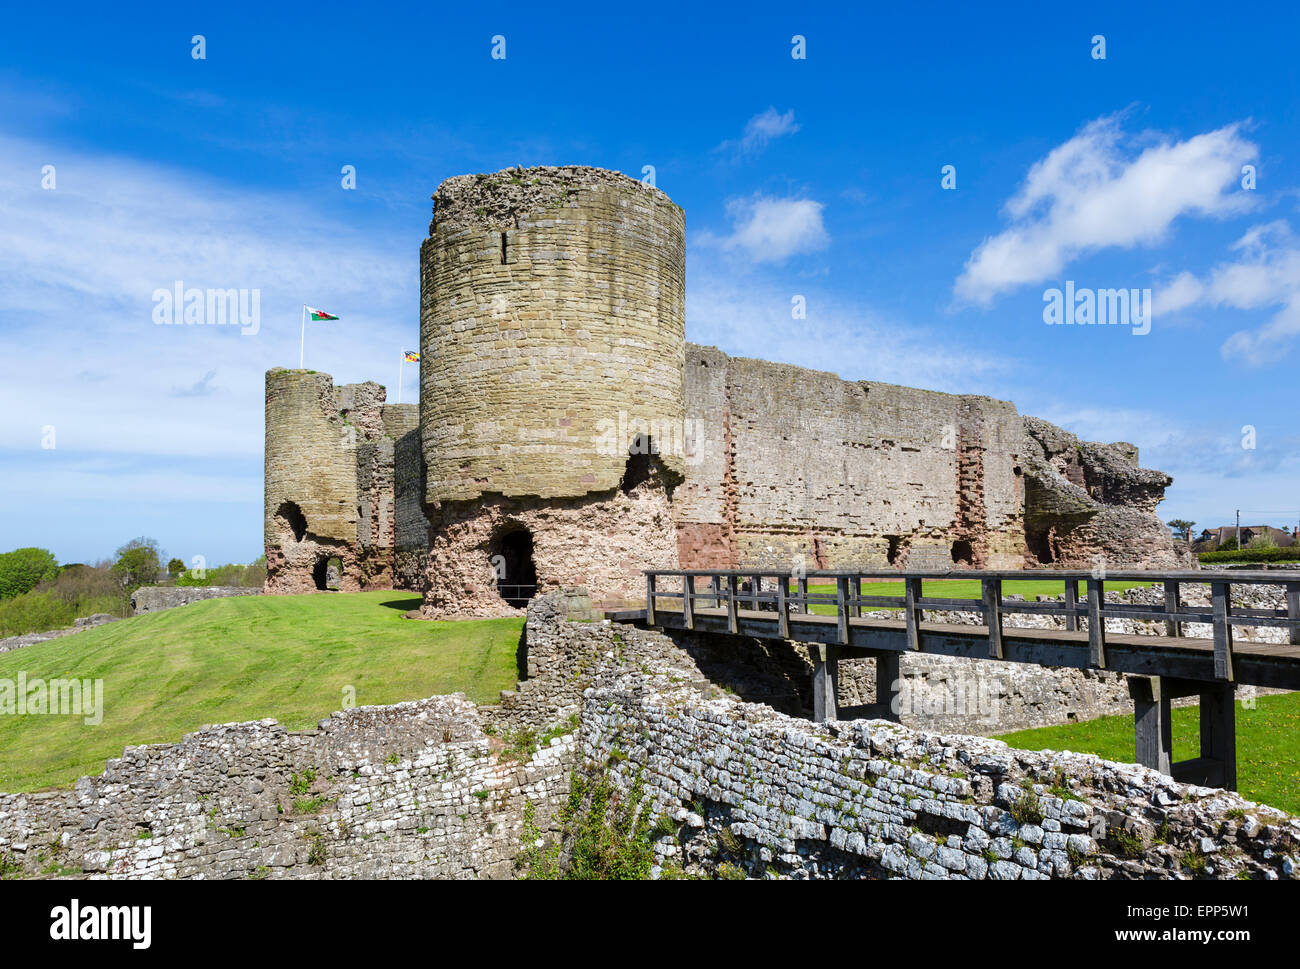 Les ruines de château Rhuddlan sur la rivière Clwyd, Rhuddlan, Denbighshire, Wales, UK Banque D'Images